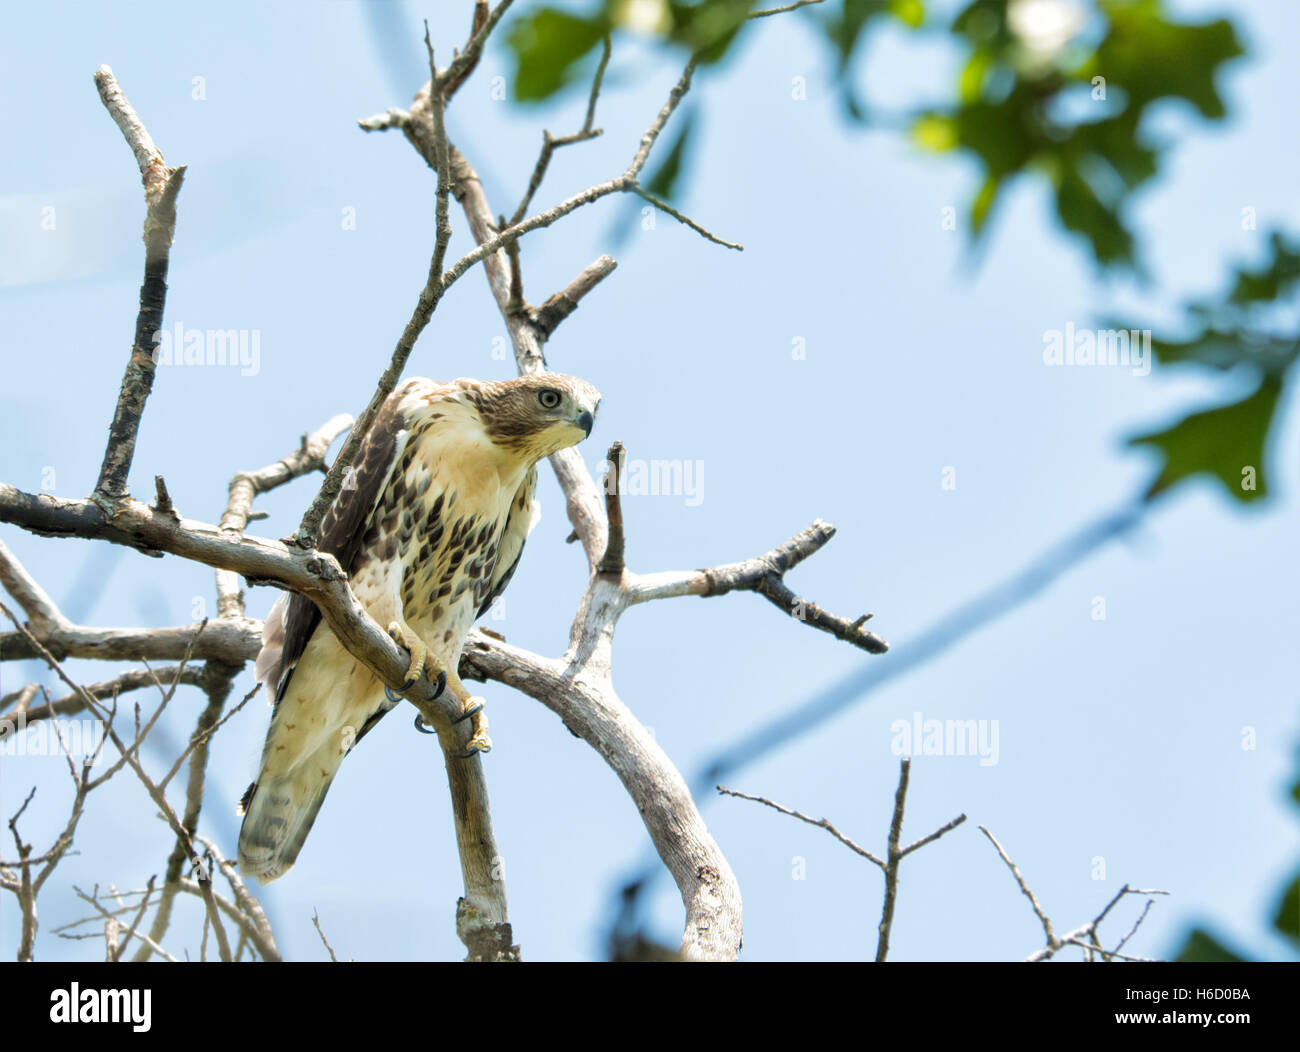 Juvenile Buteo Jamaicensis, rot - angebundener Falke, sitzt auf einem Baum, spähen nach unten Stockfoto